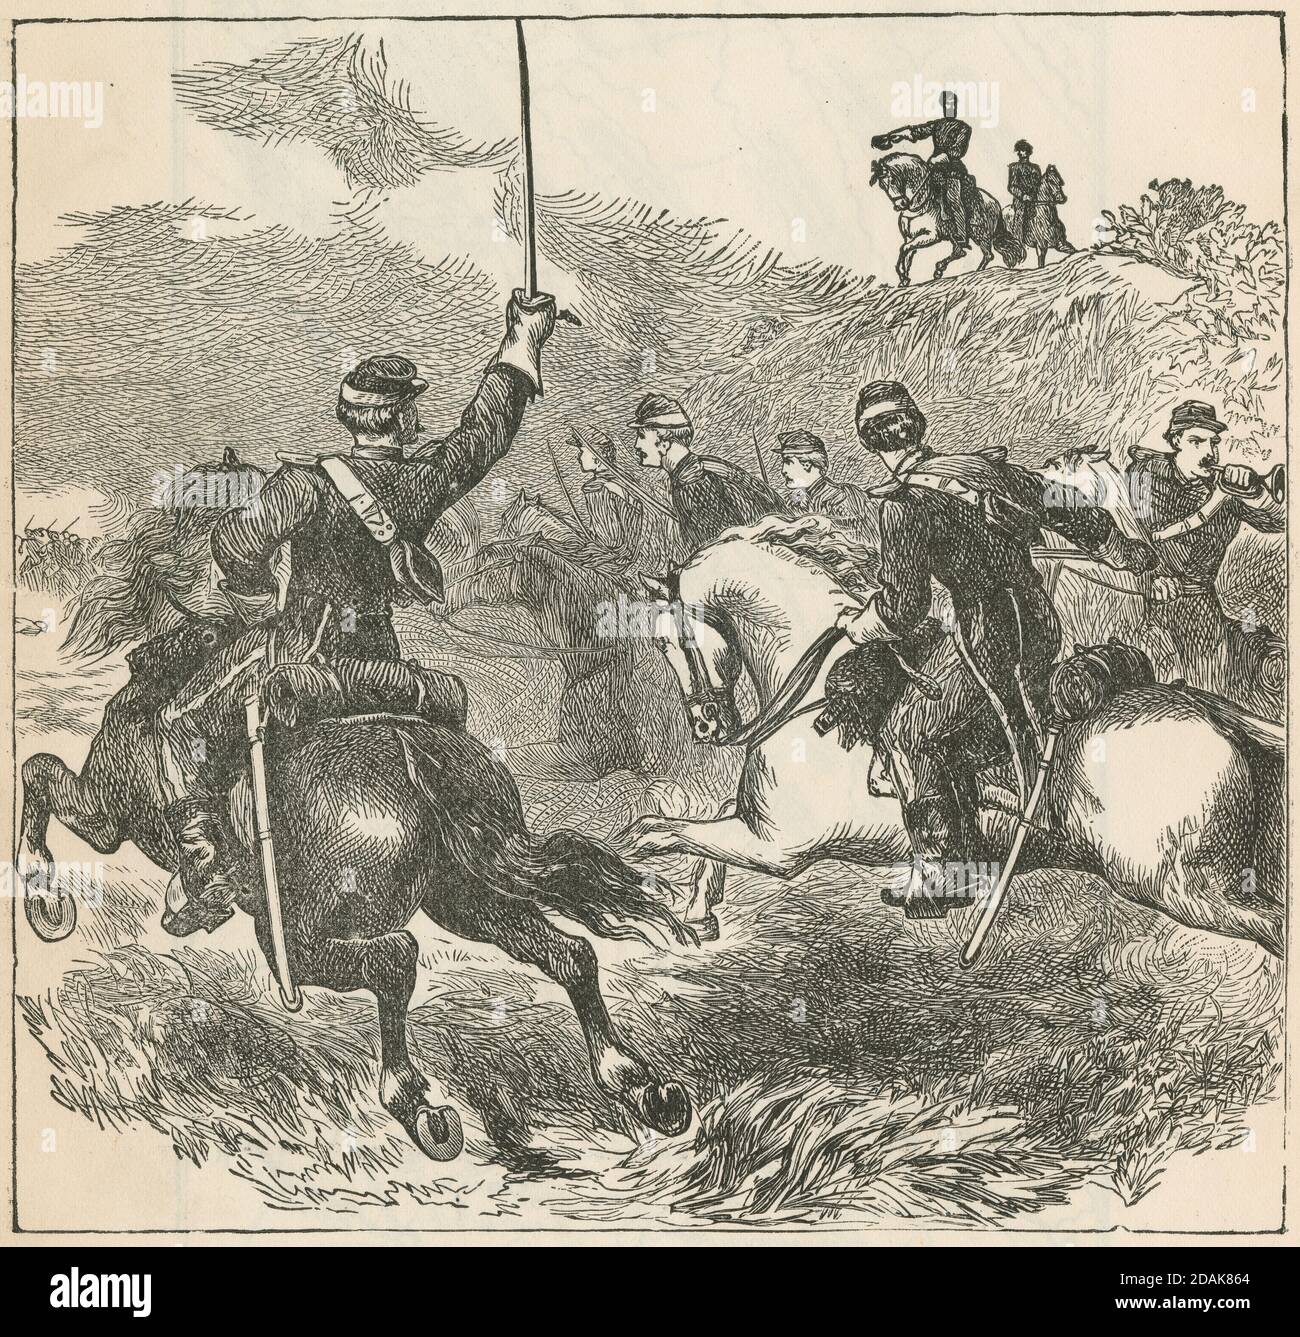 Gravure antique c1870, une charge de cavalerie de la Guerre civile. SOURCE : GRAVURE ORIGINALE Banque D'Images